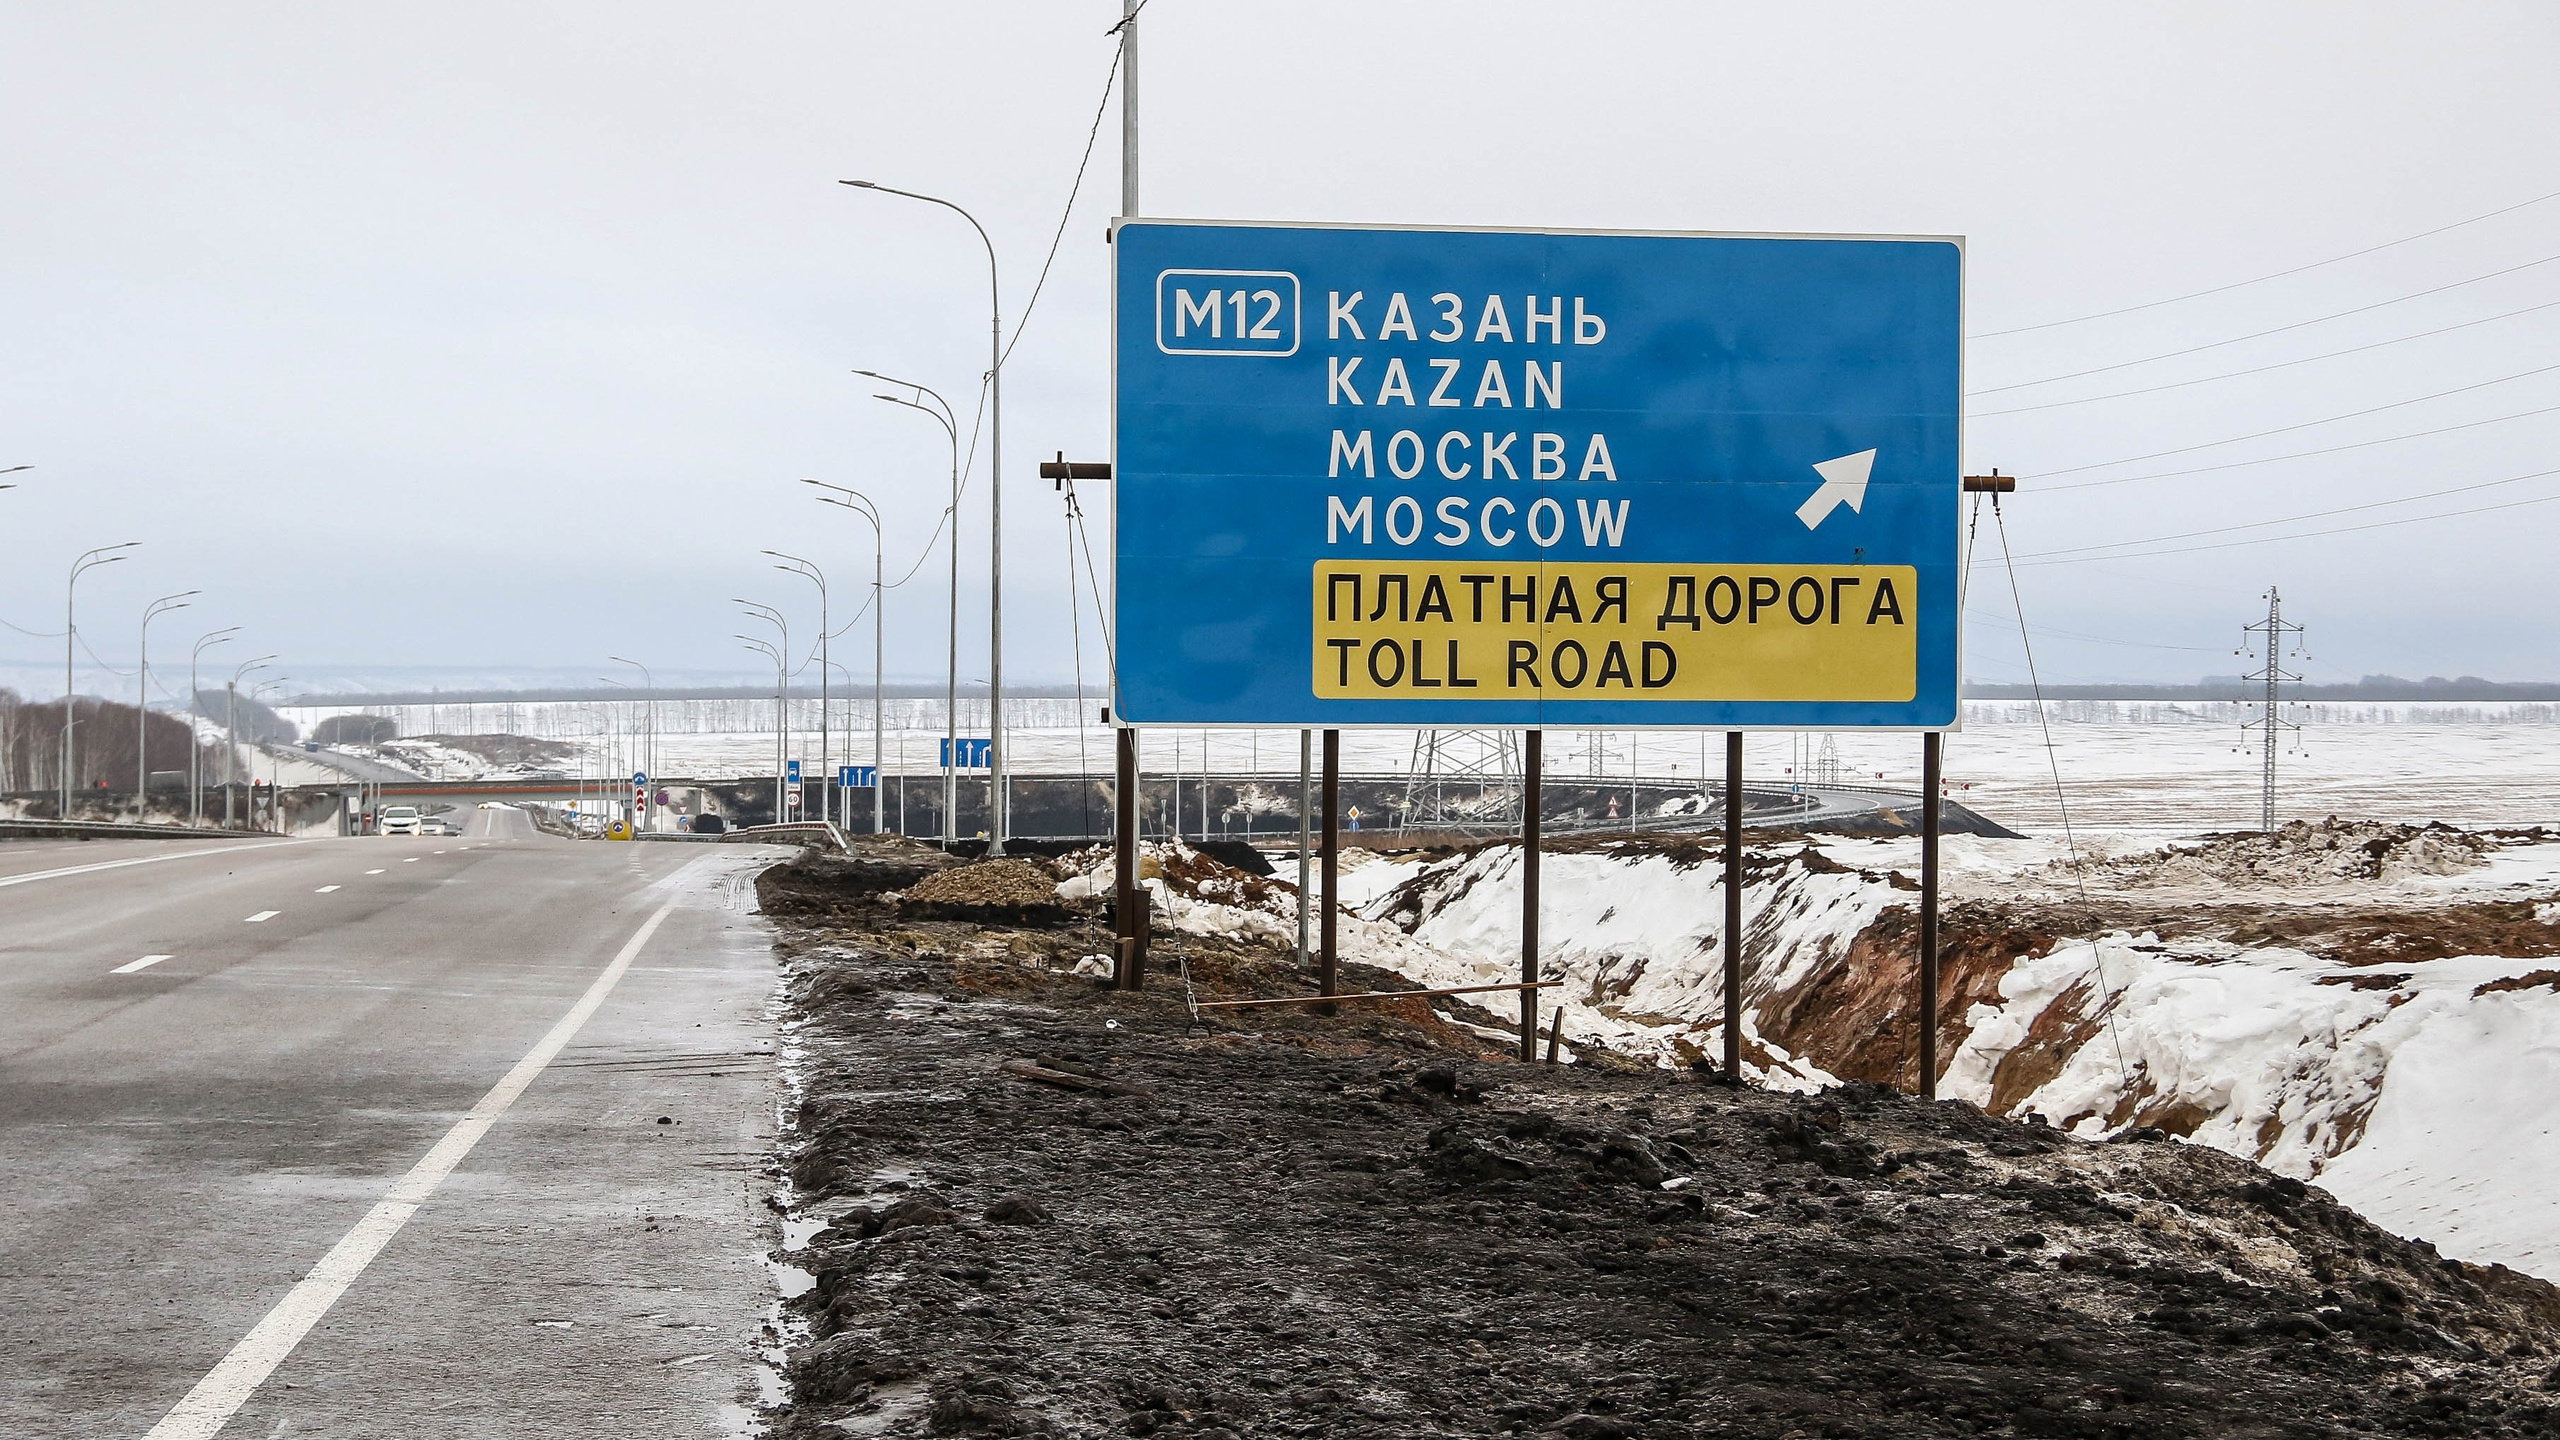 Без интернета, туалета и разметки. Прокатились по новой трассе Казань — Москва, проезд по которой стоит 5 тысяч